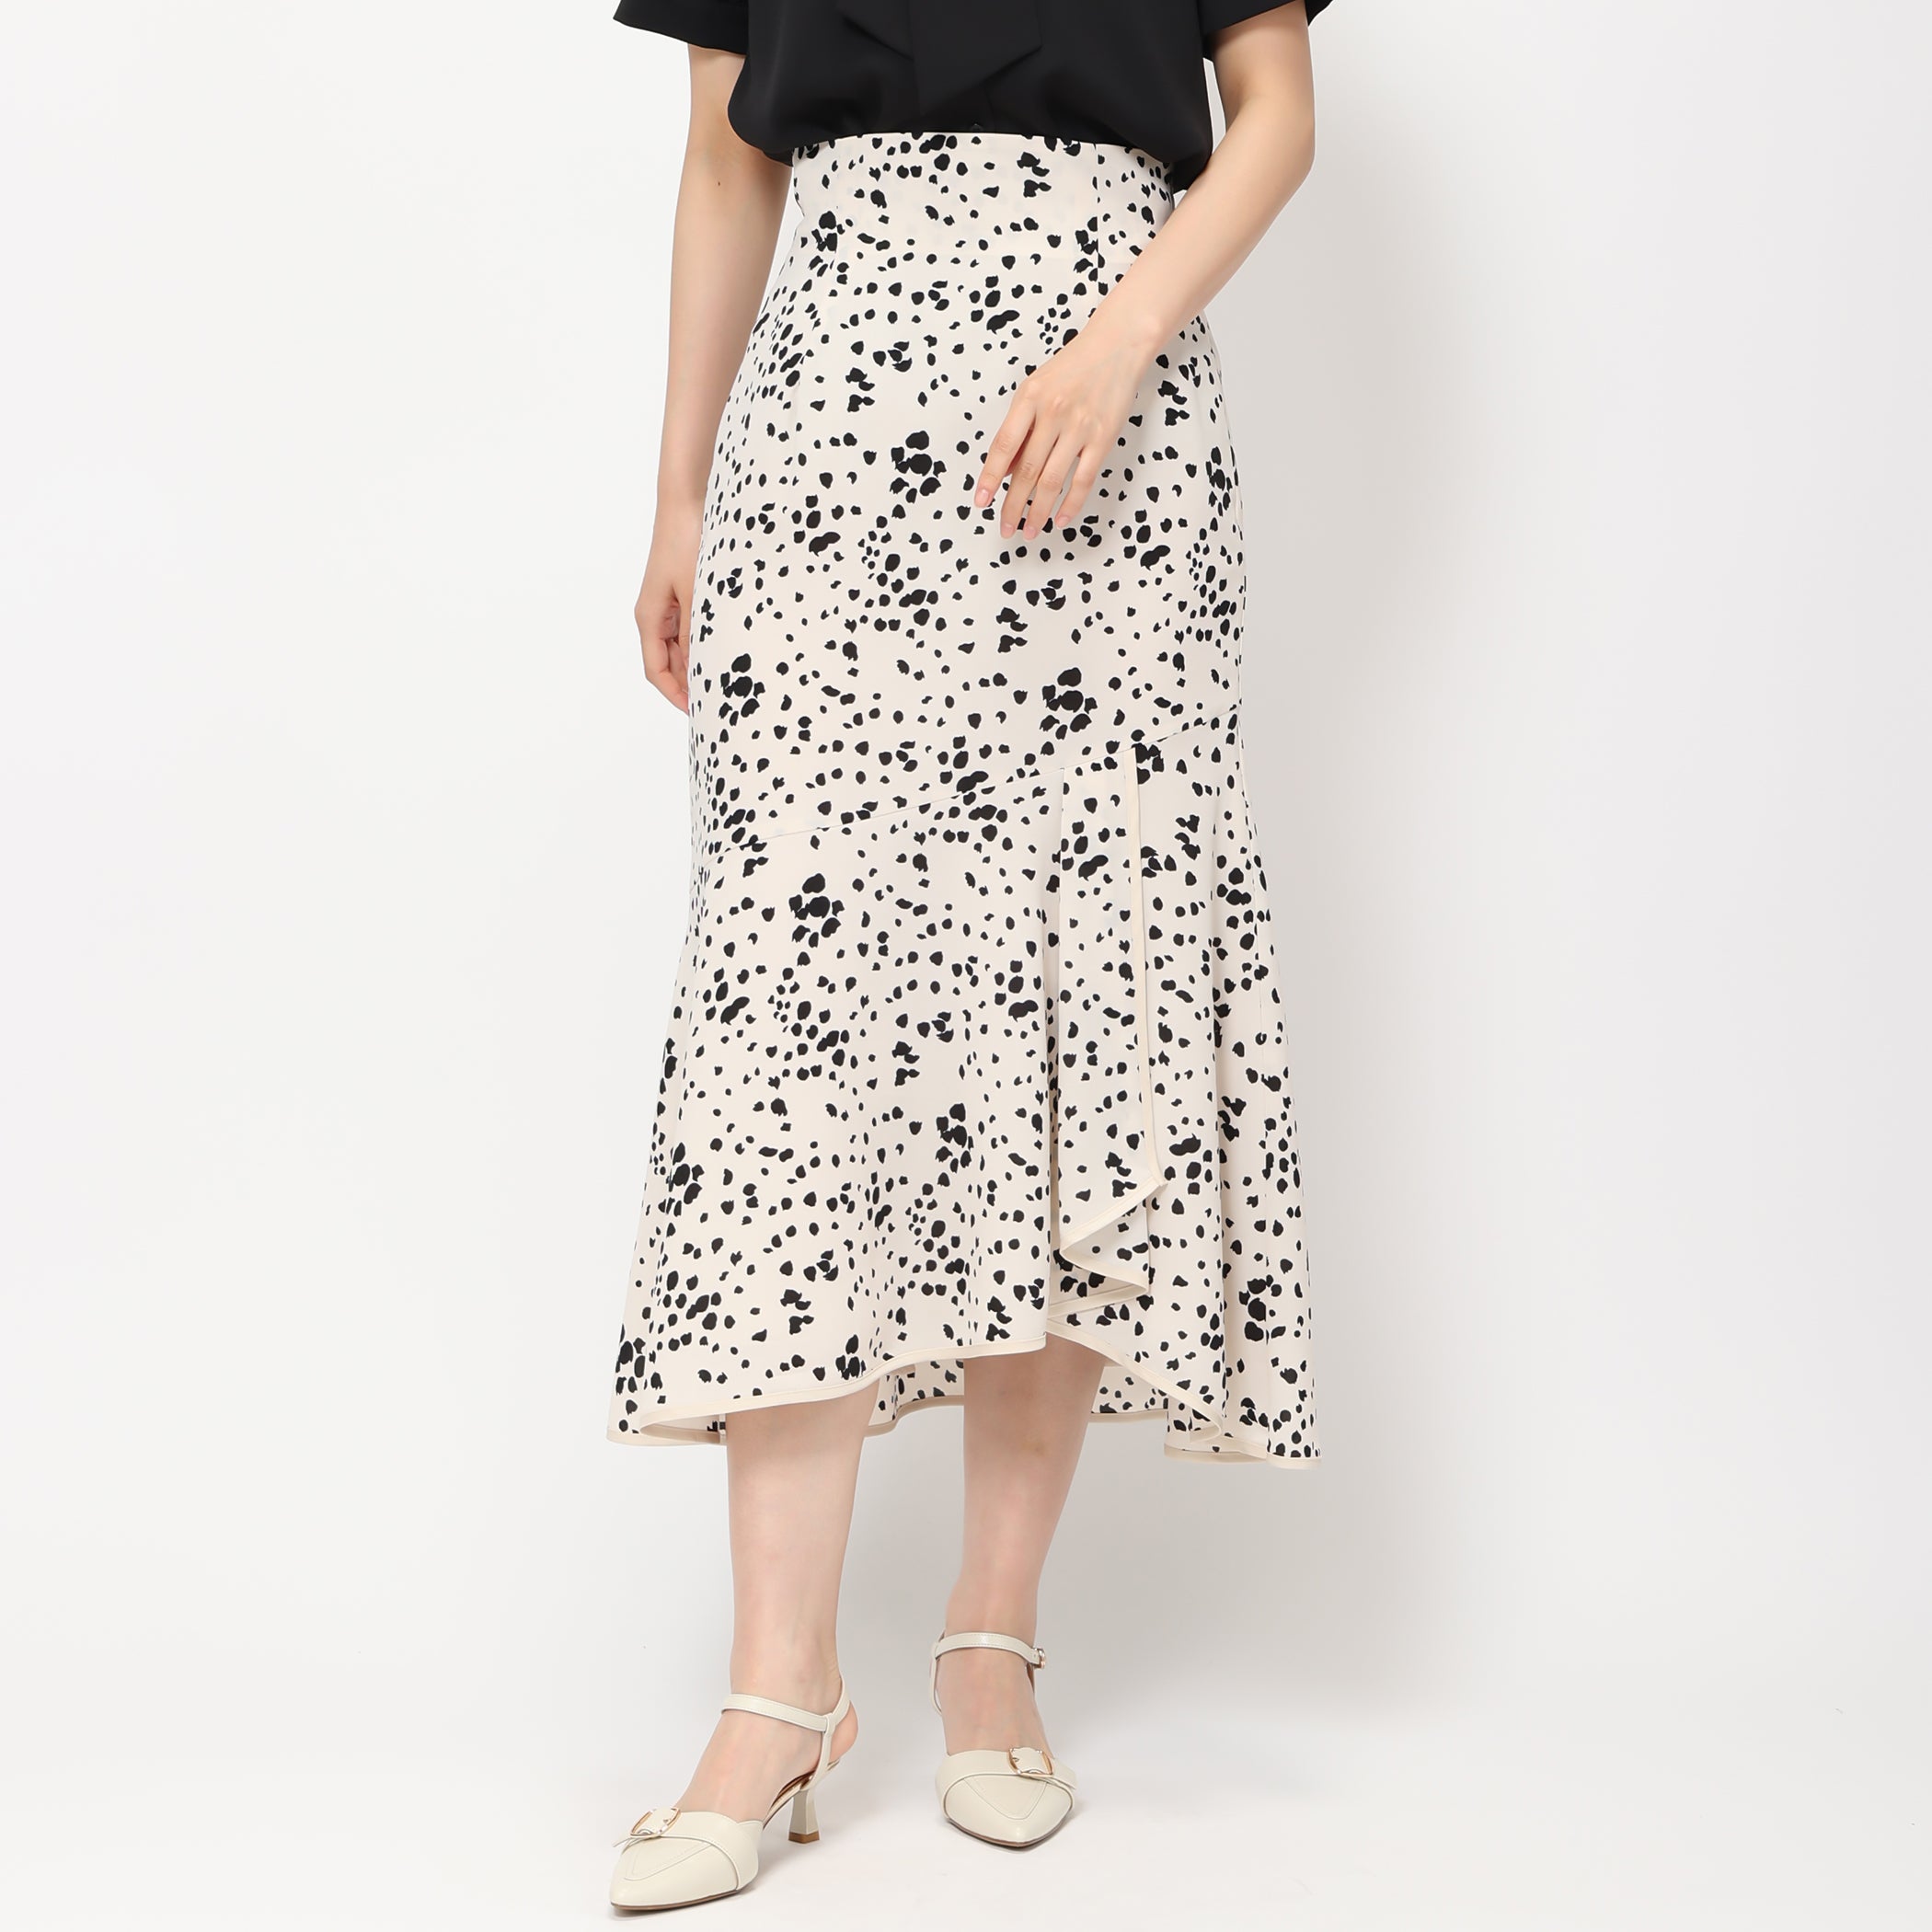 裾ラップマーメイドスカート/MM427204 (ホワイト/ブラック)